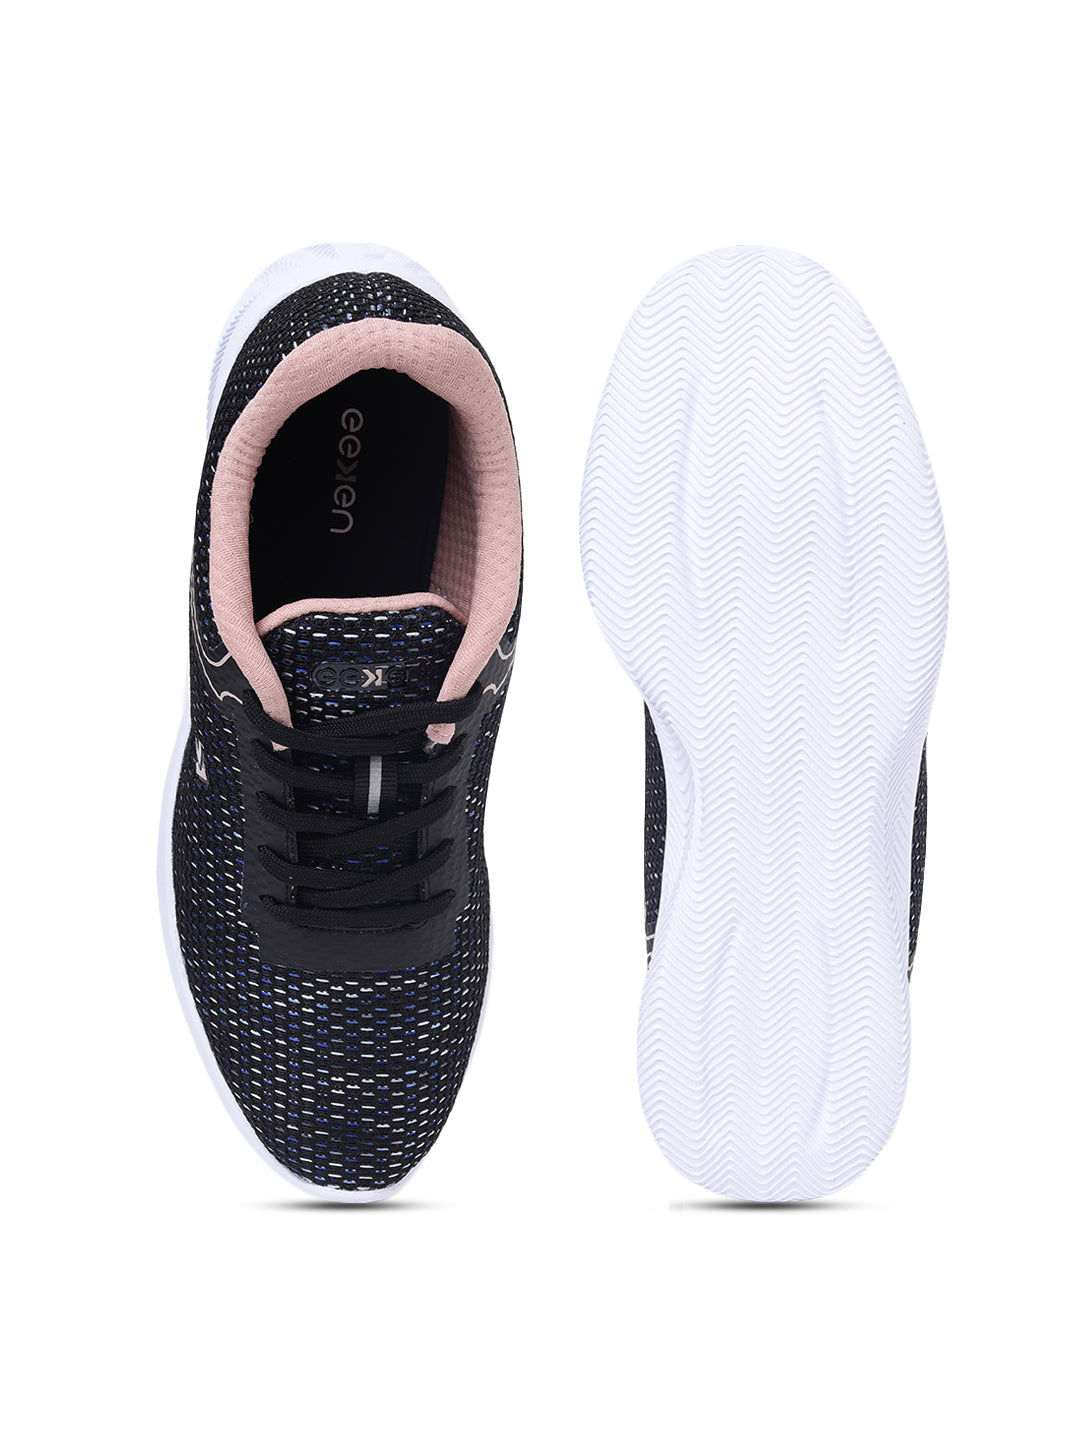 Eeken Lightweight Textured Black &amp; Peach Casual Outdoor Shoes For Women